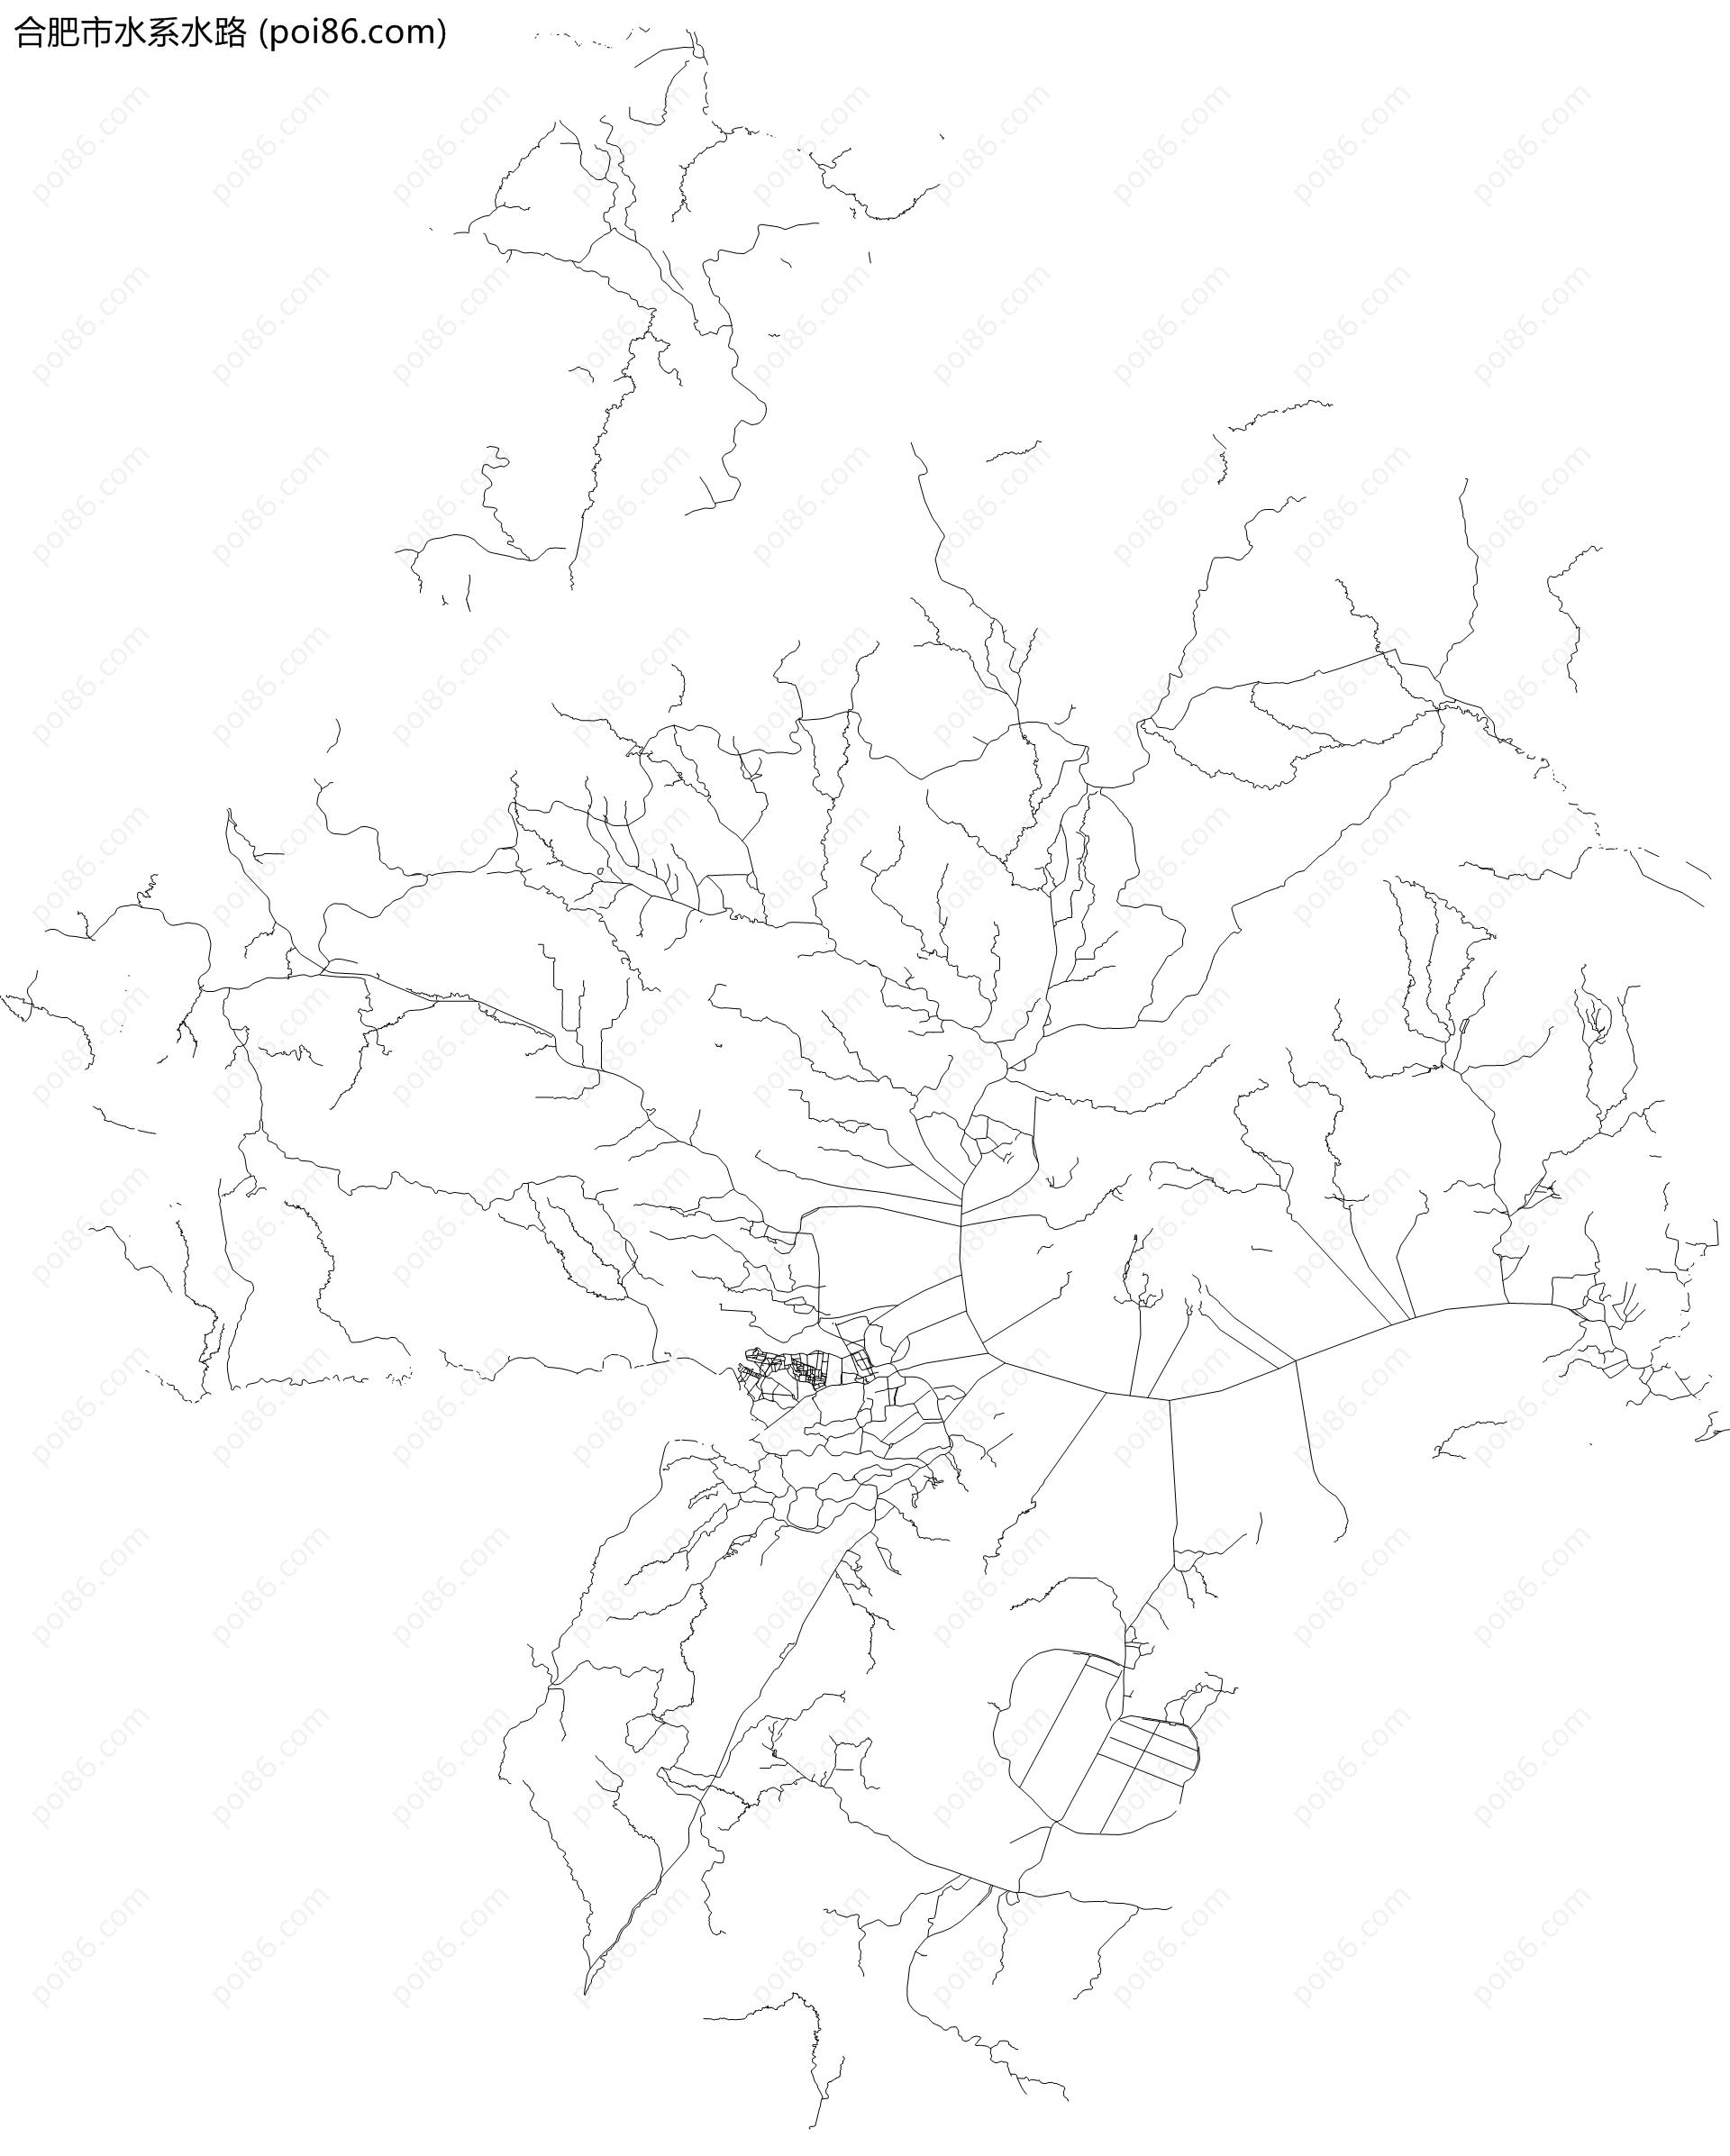 合肥市水系水路地图